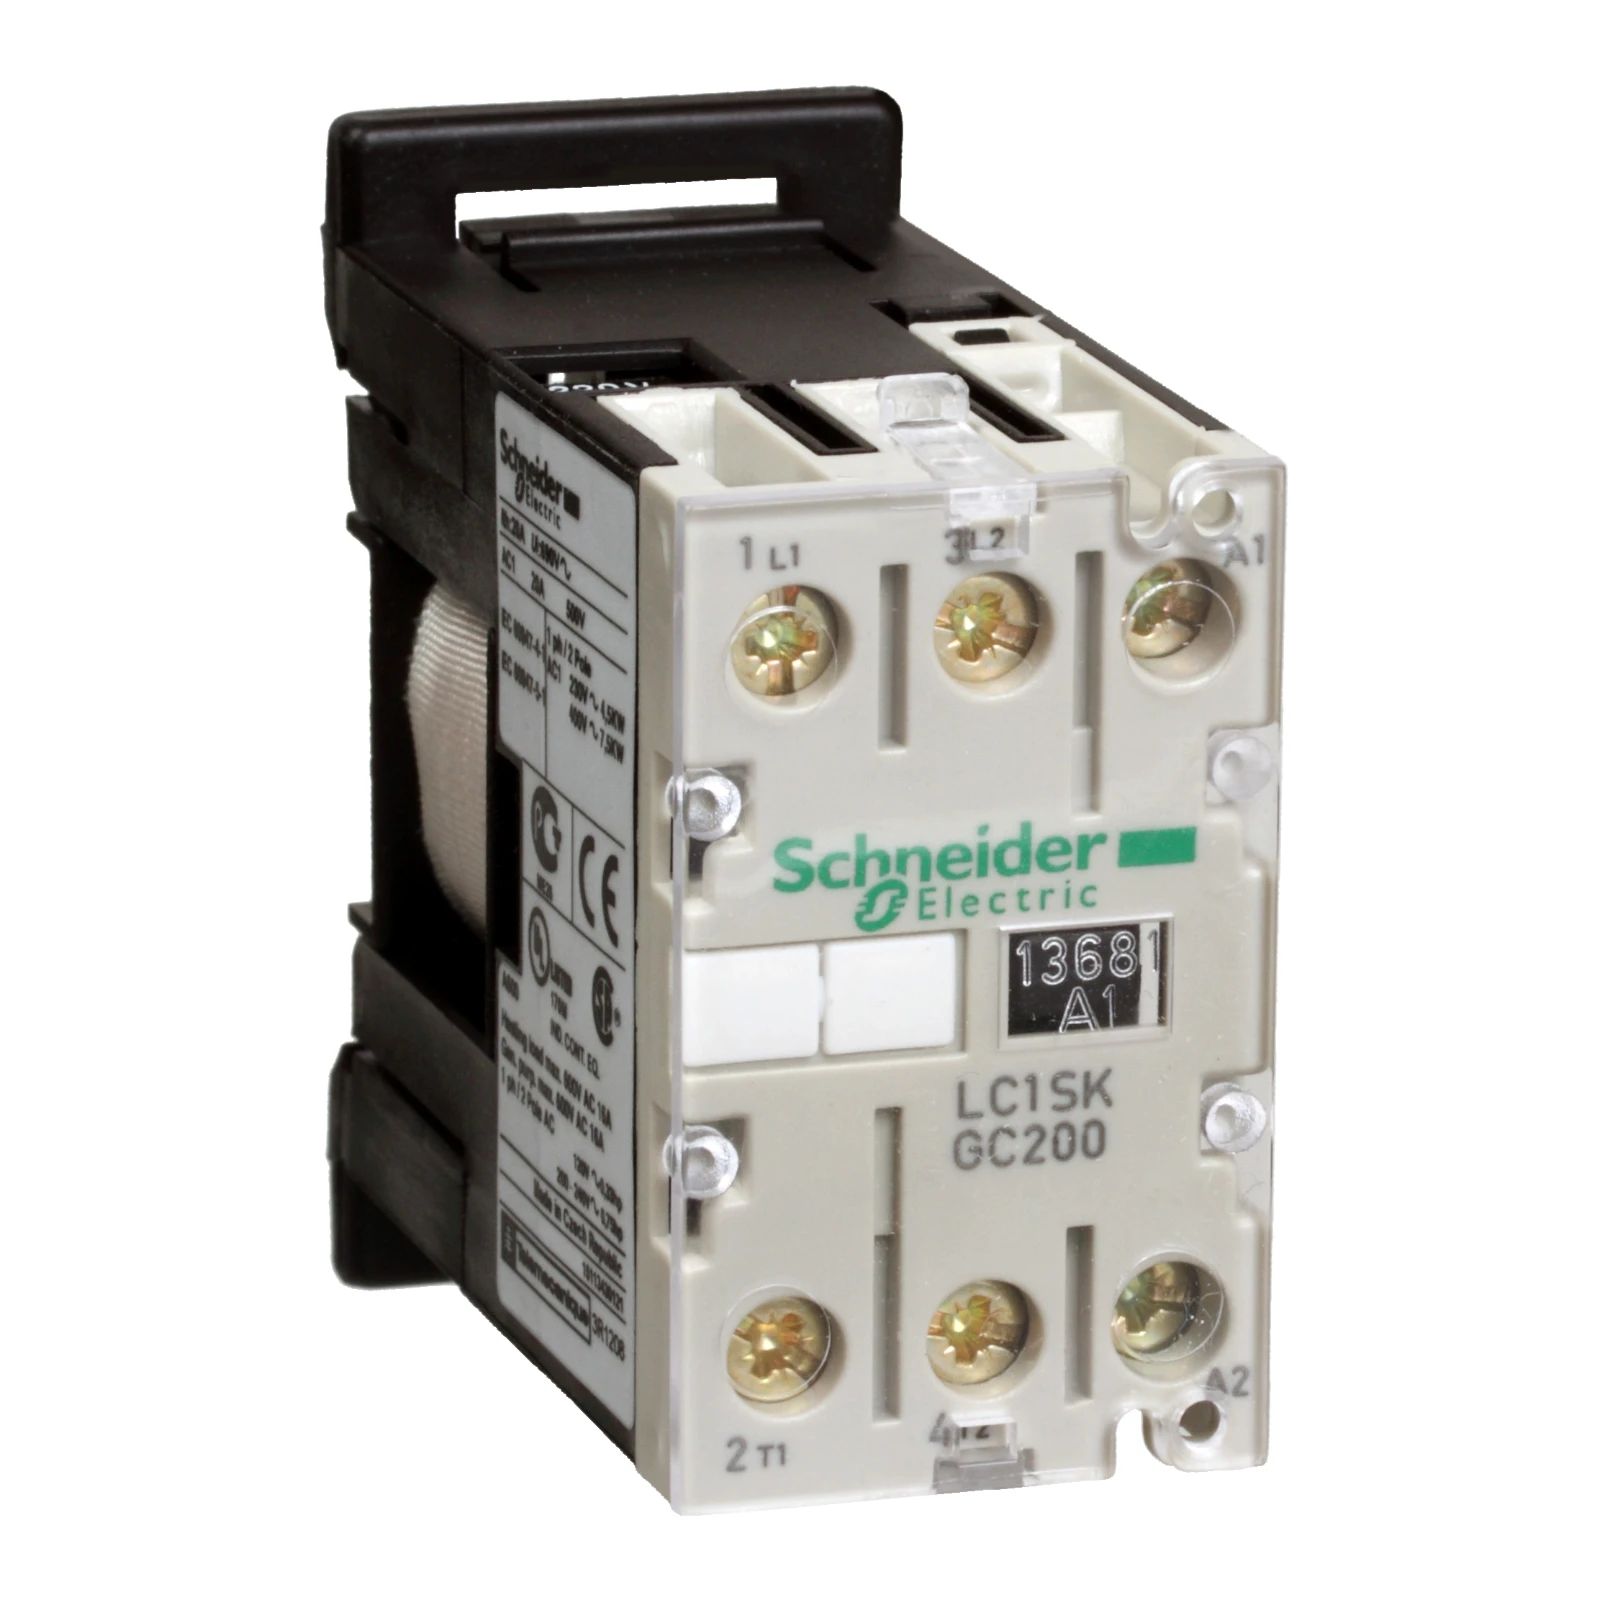 1042215 - Schneider Electric LC1SKGC200B7